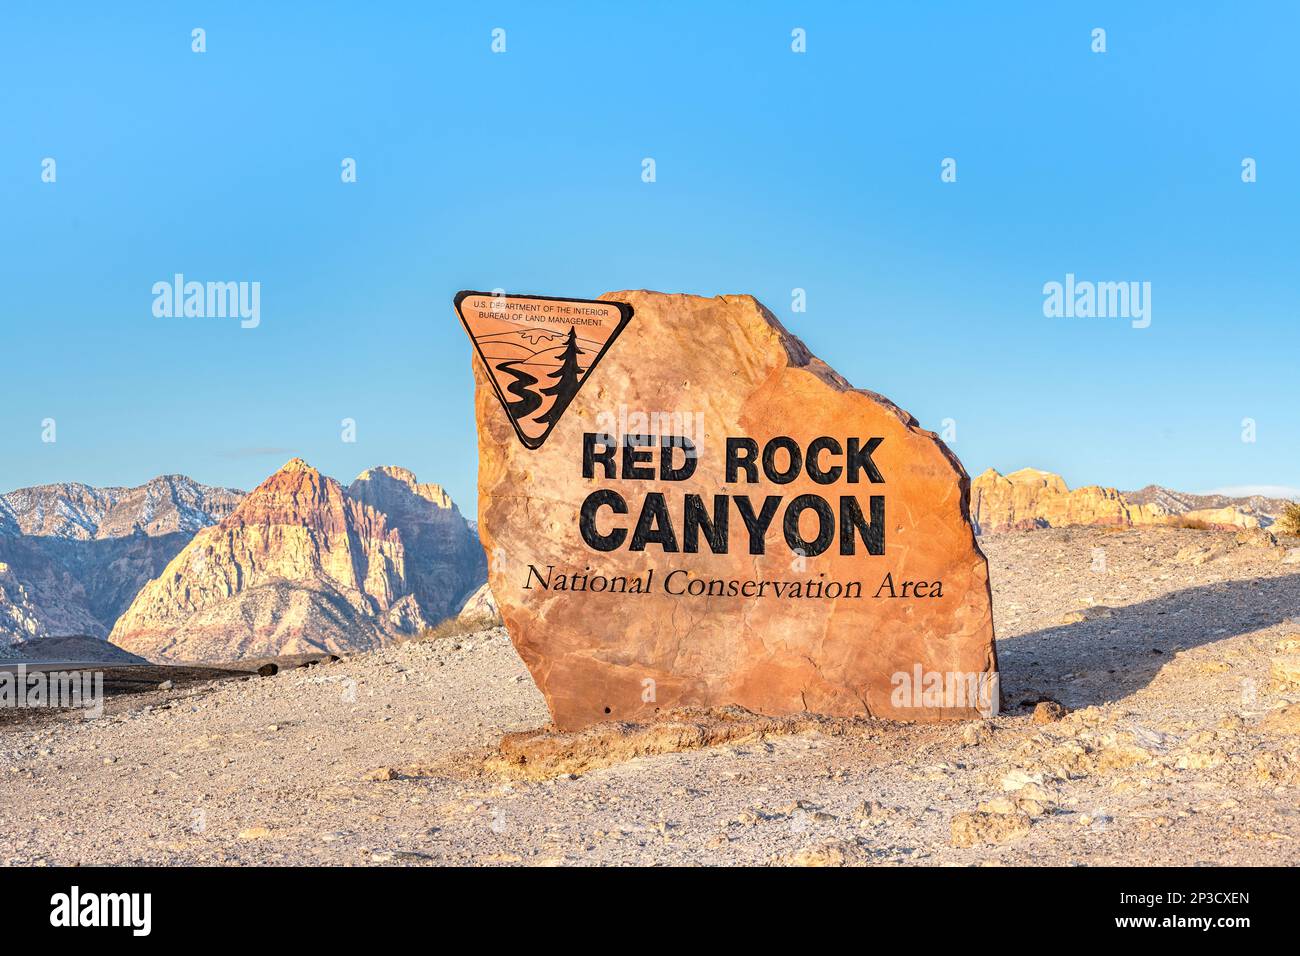 All'ingresso del Red Rock Canyon c'è una bella pietra che mette in risalto il nome di una delle famose aree protette di Las Vegas. Foto Stock